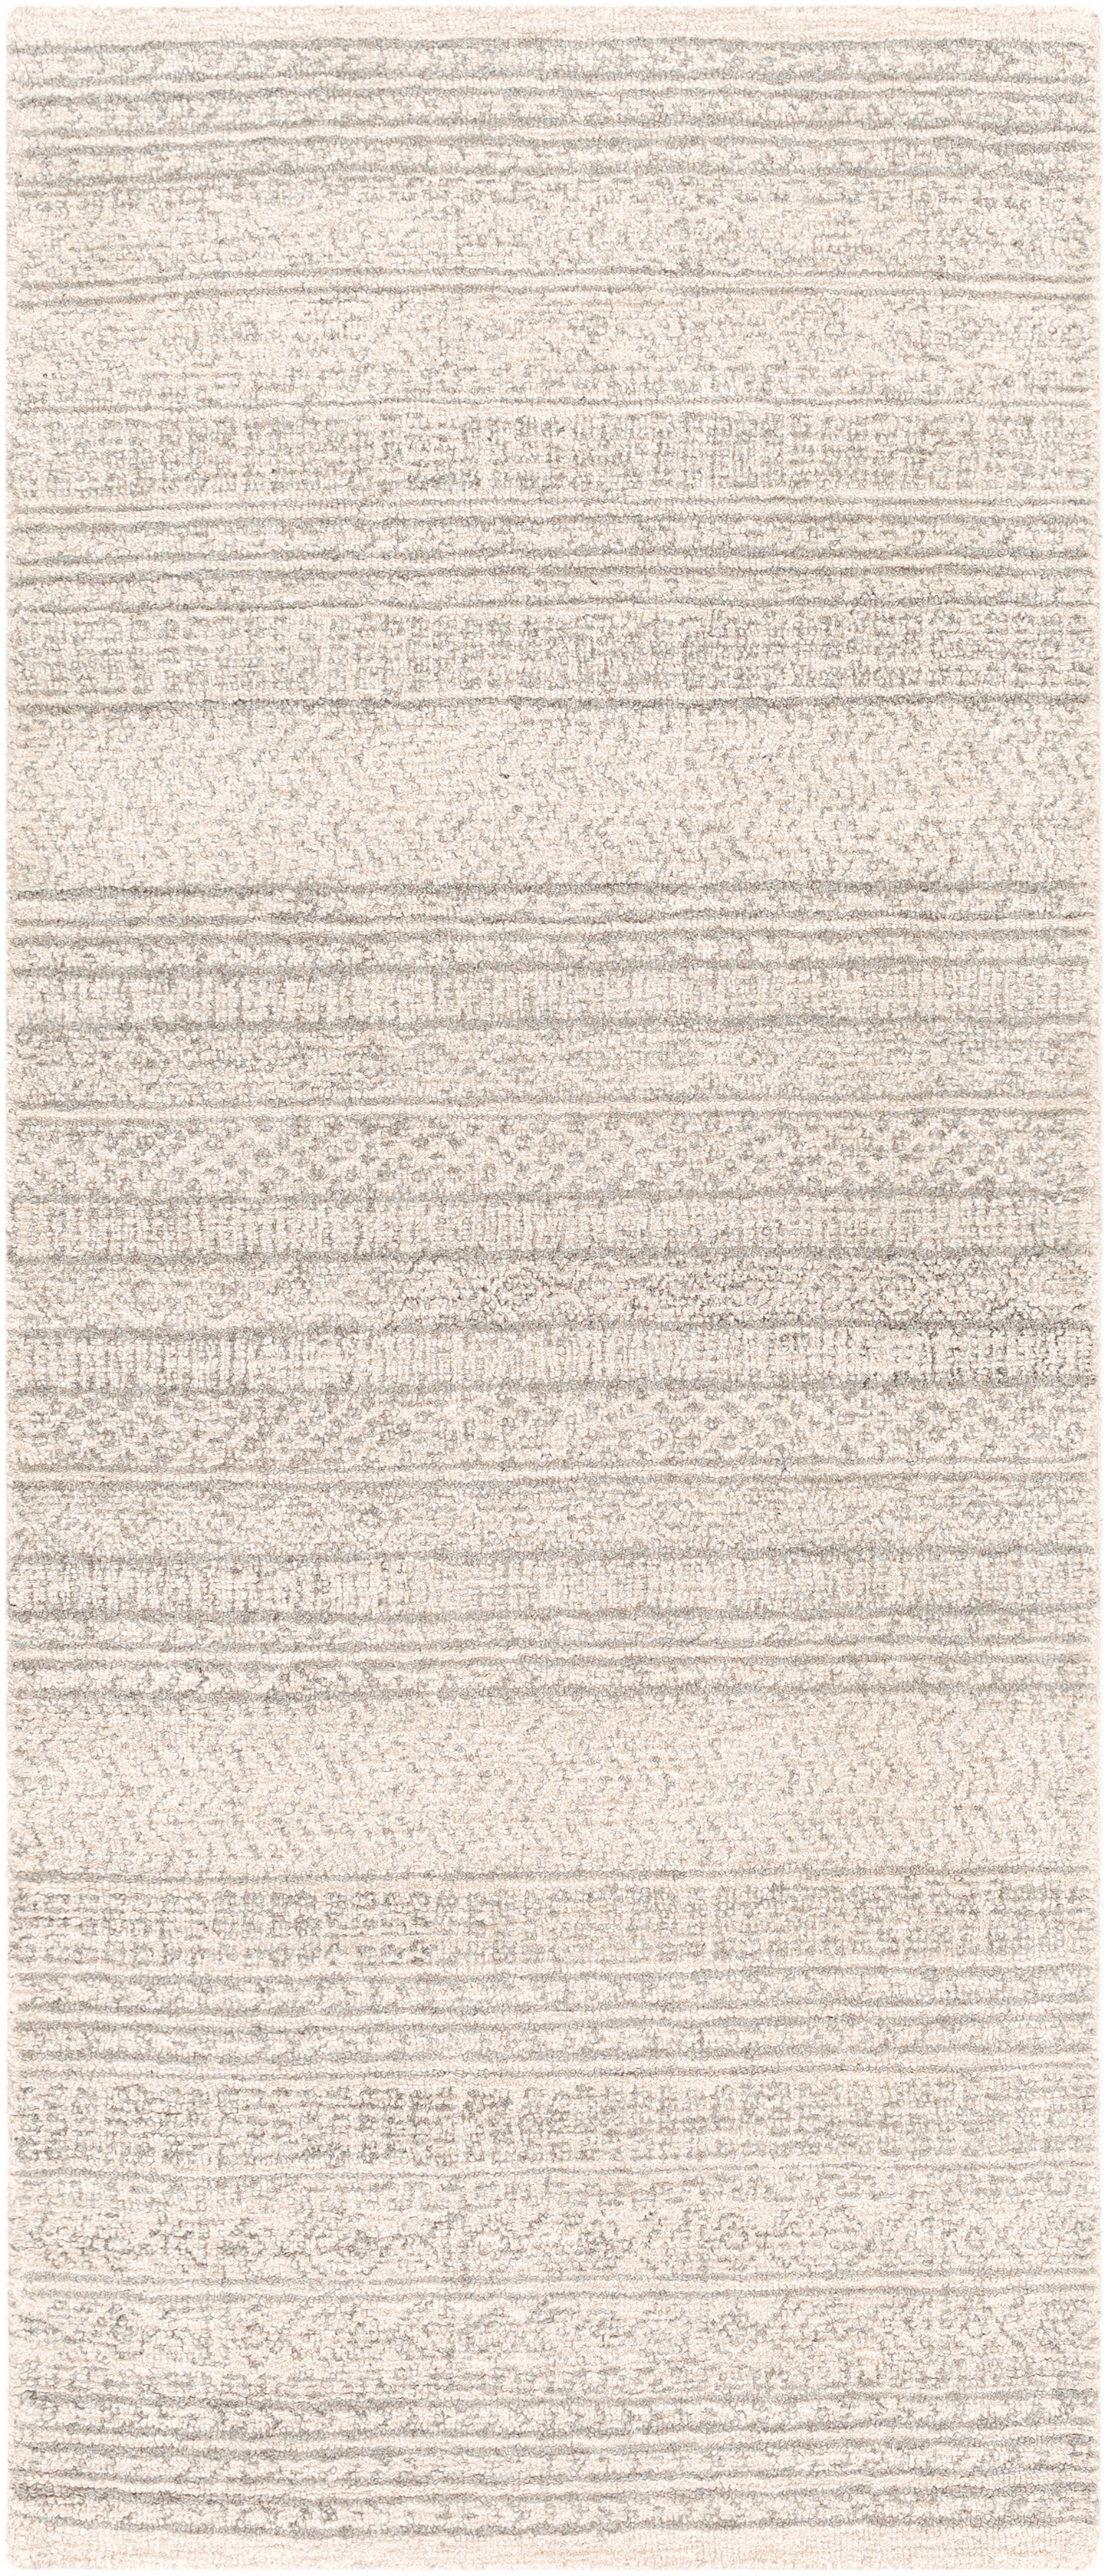 Maroc 23456 Hand Tufted Wool Indoor Area Rug by Surya Rugs